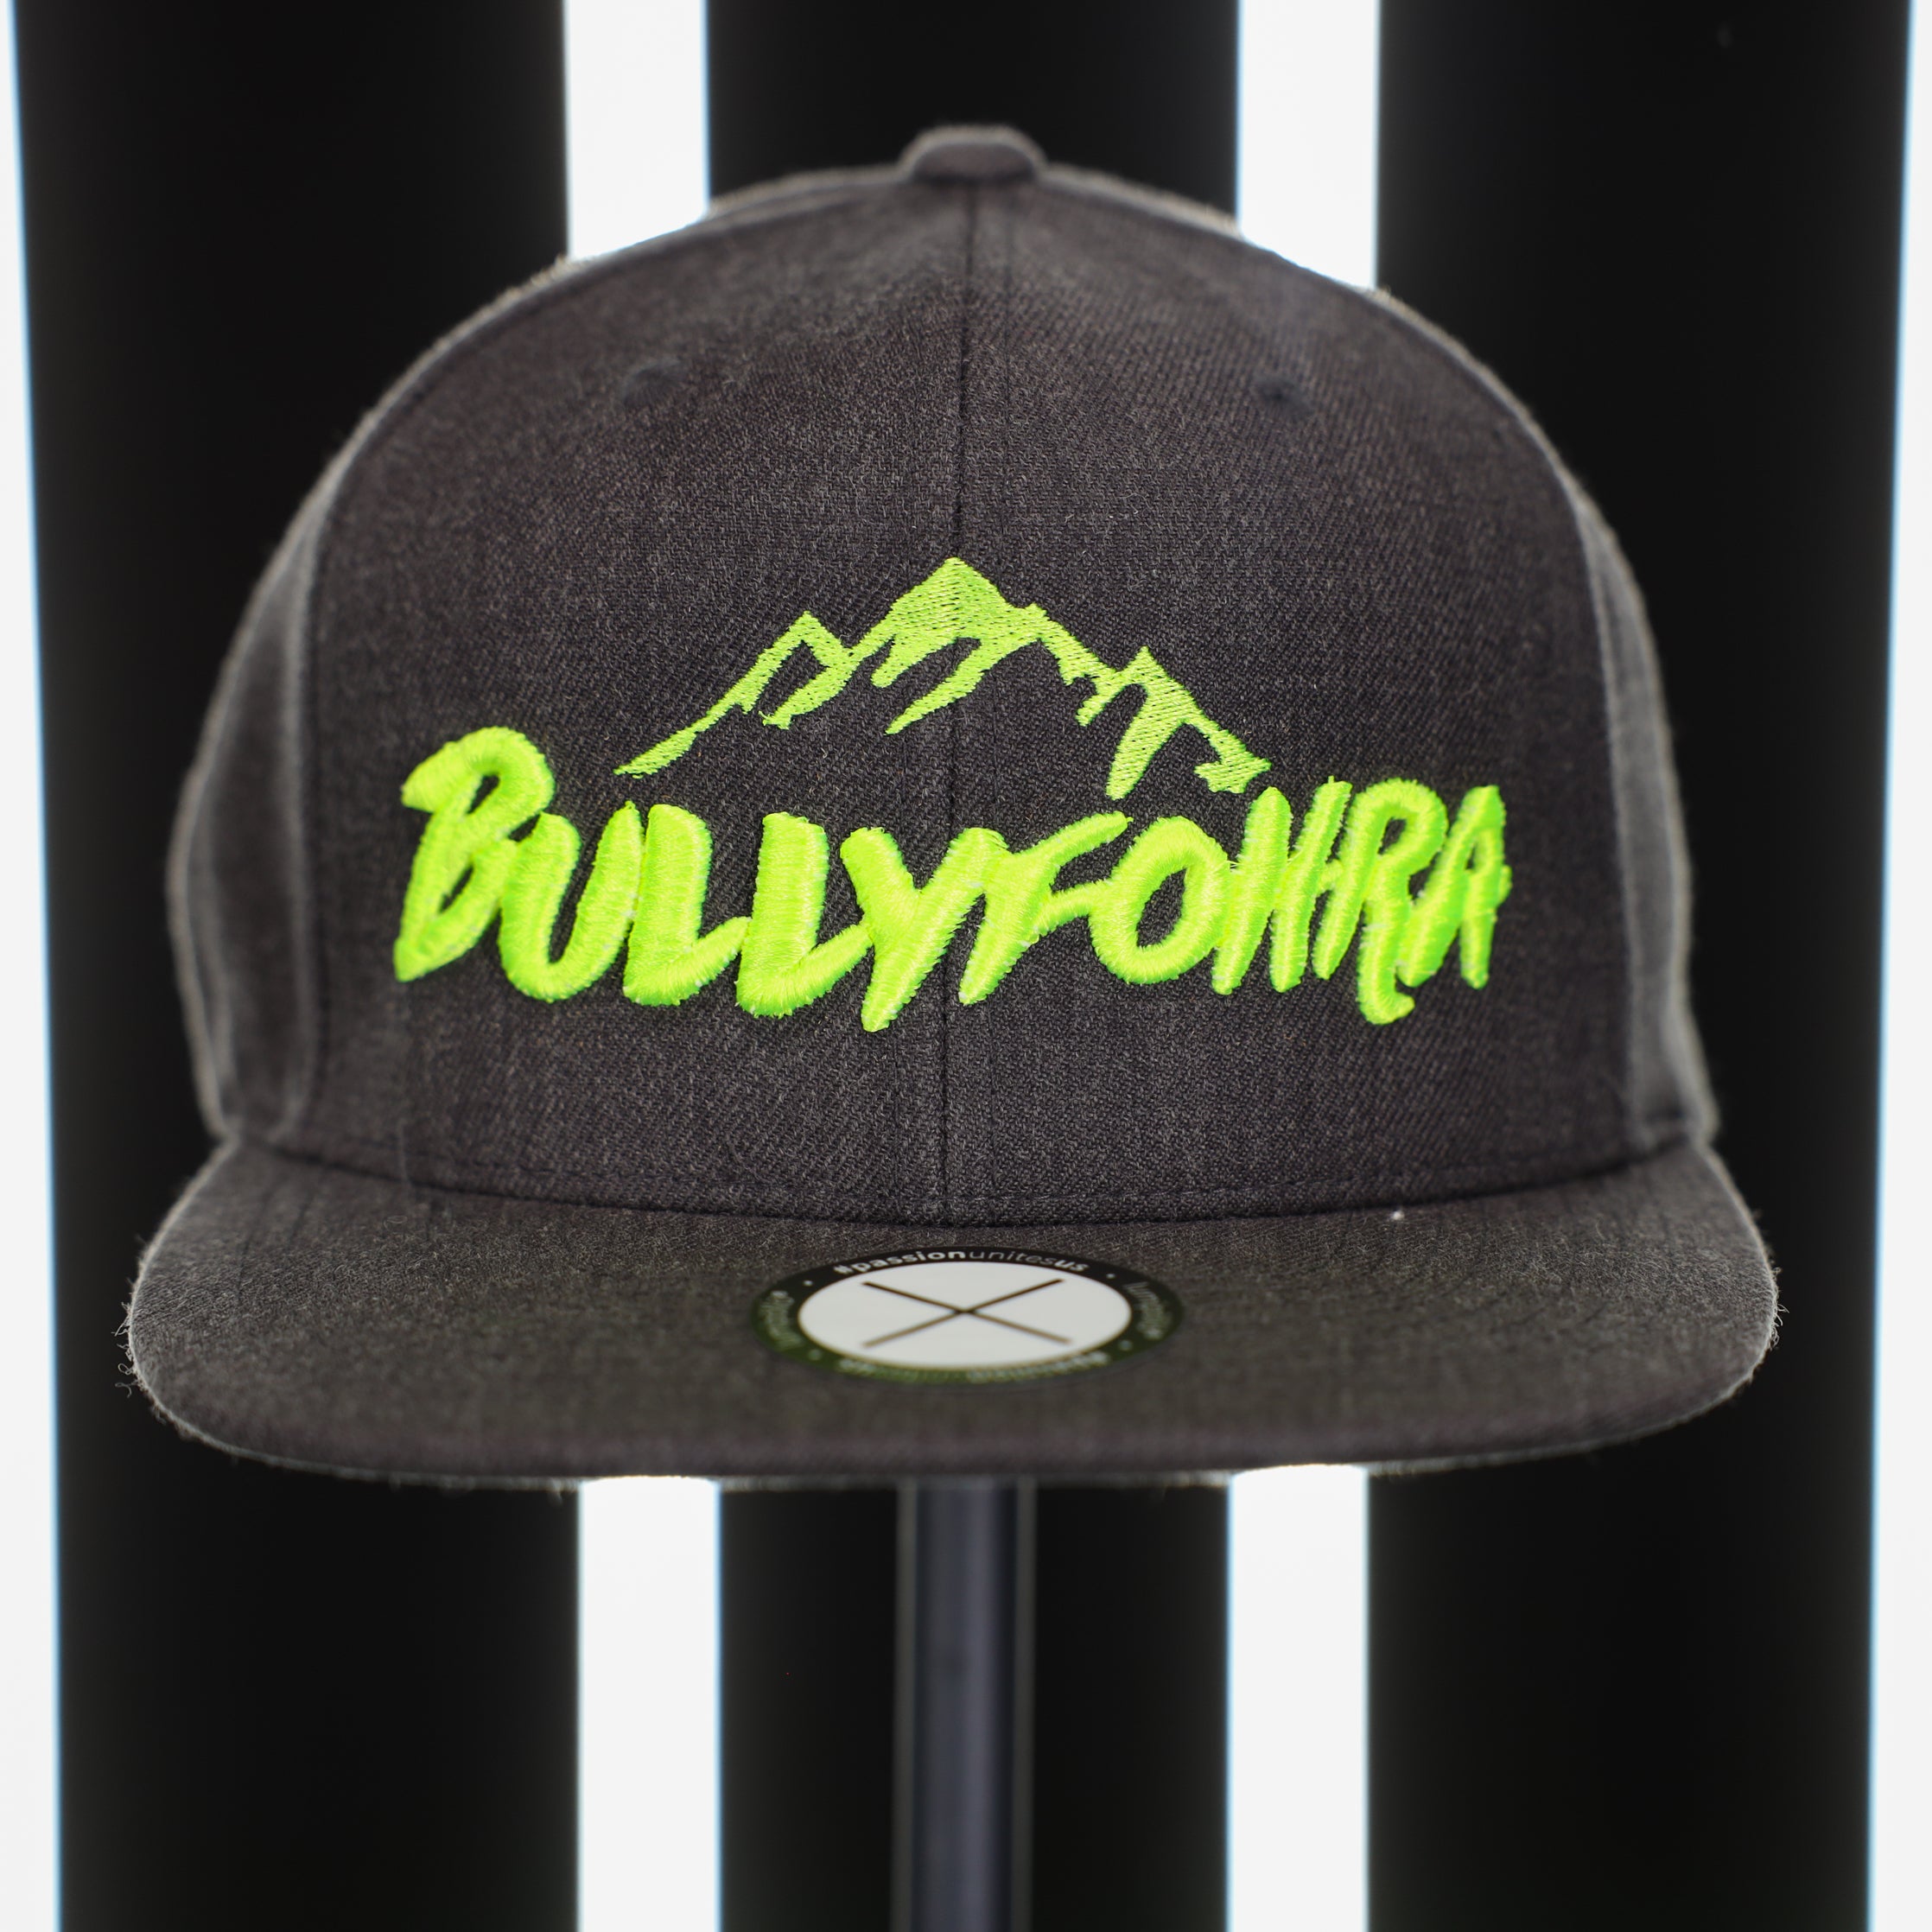 Bullyfohra Cap - Grey neon